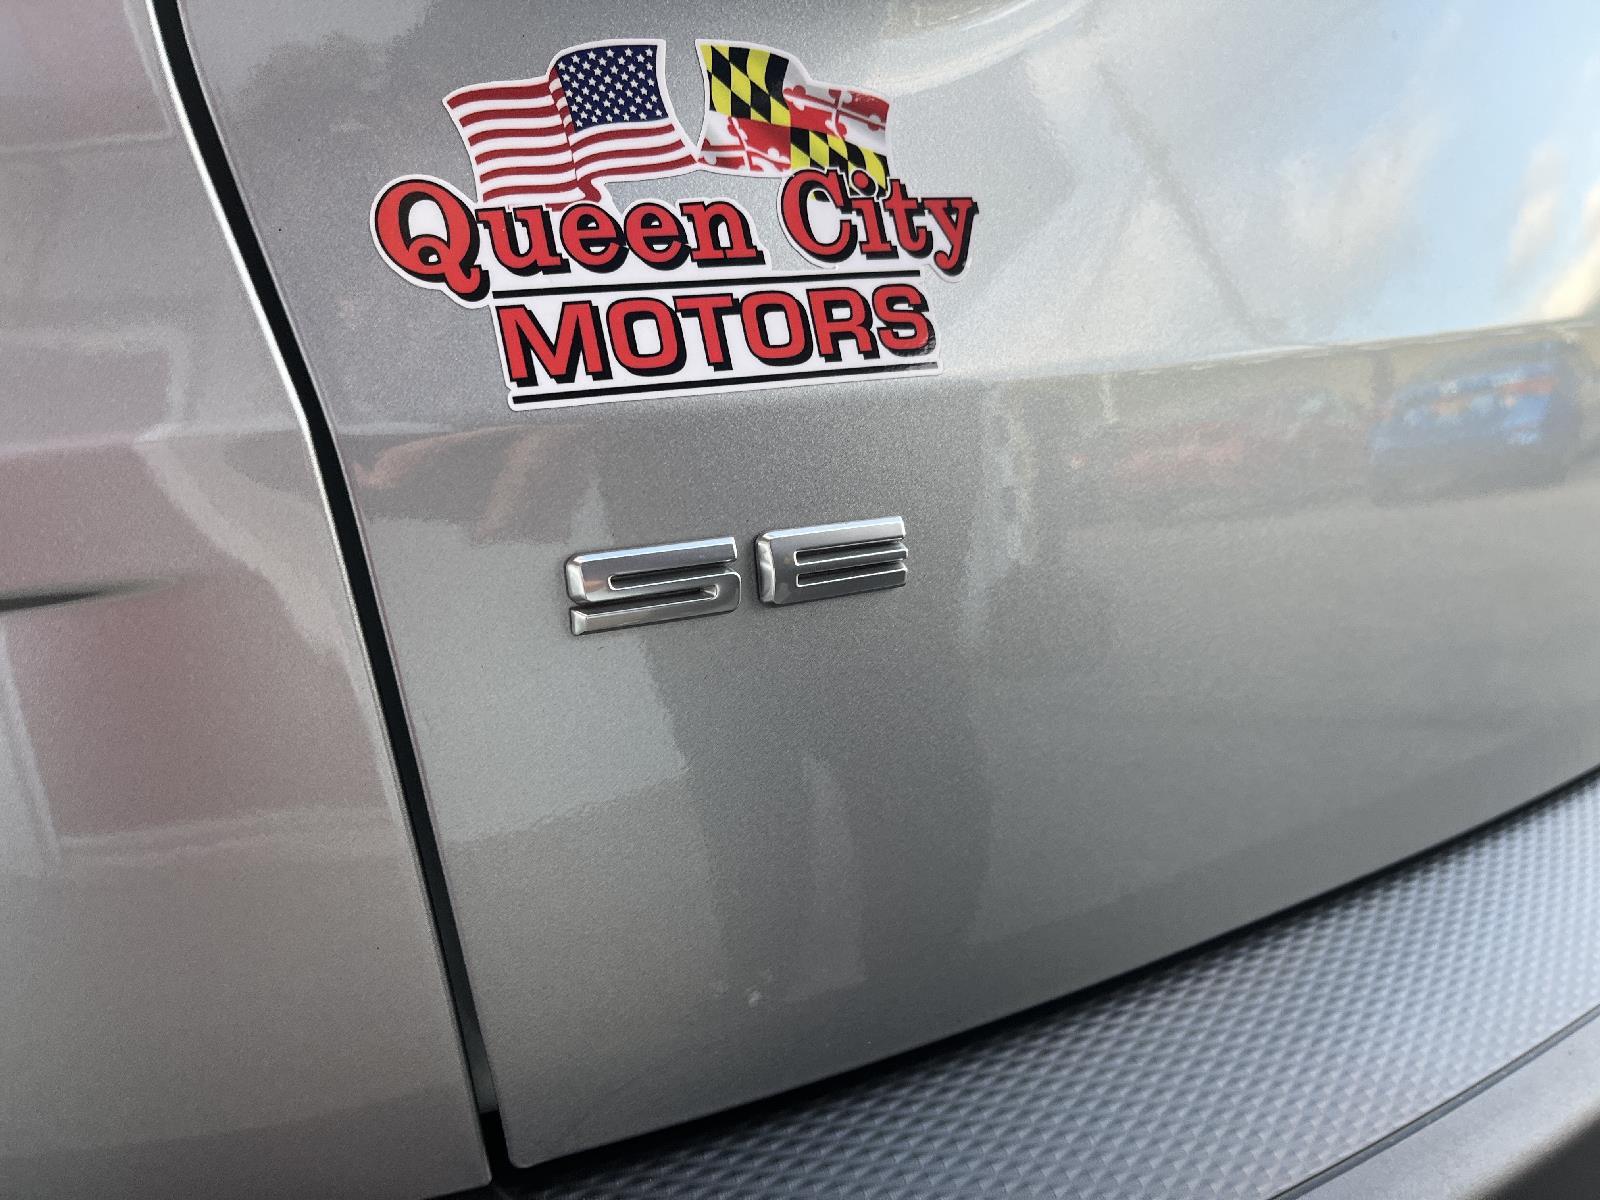 Queen City Motors